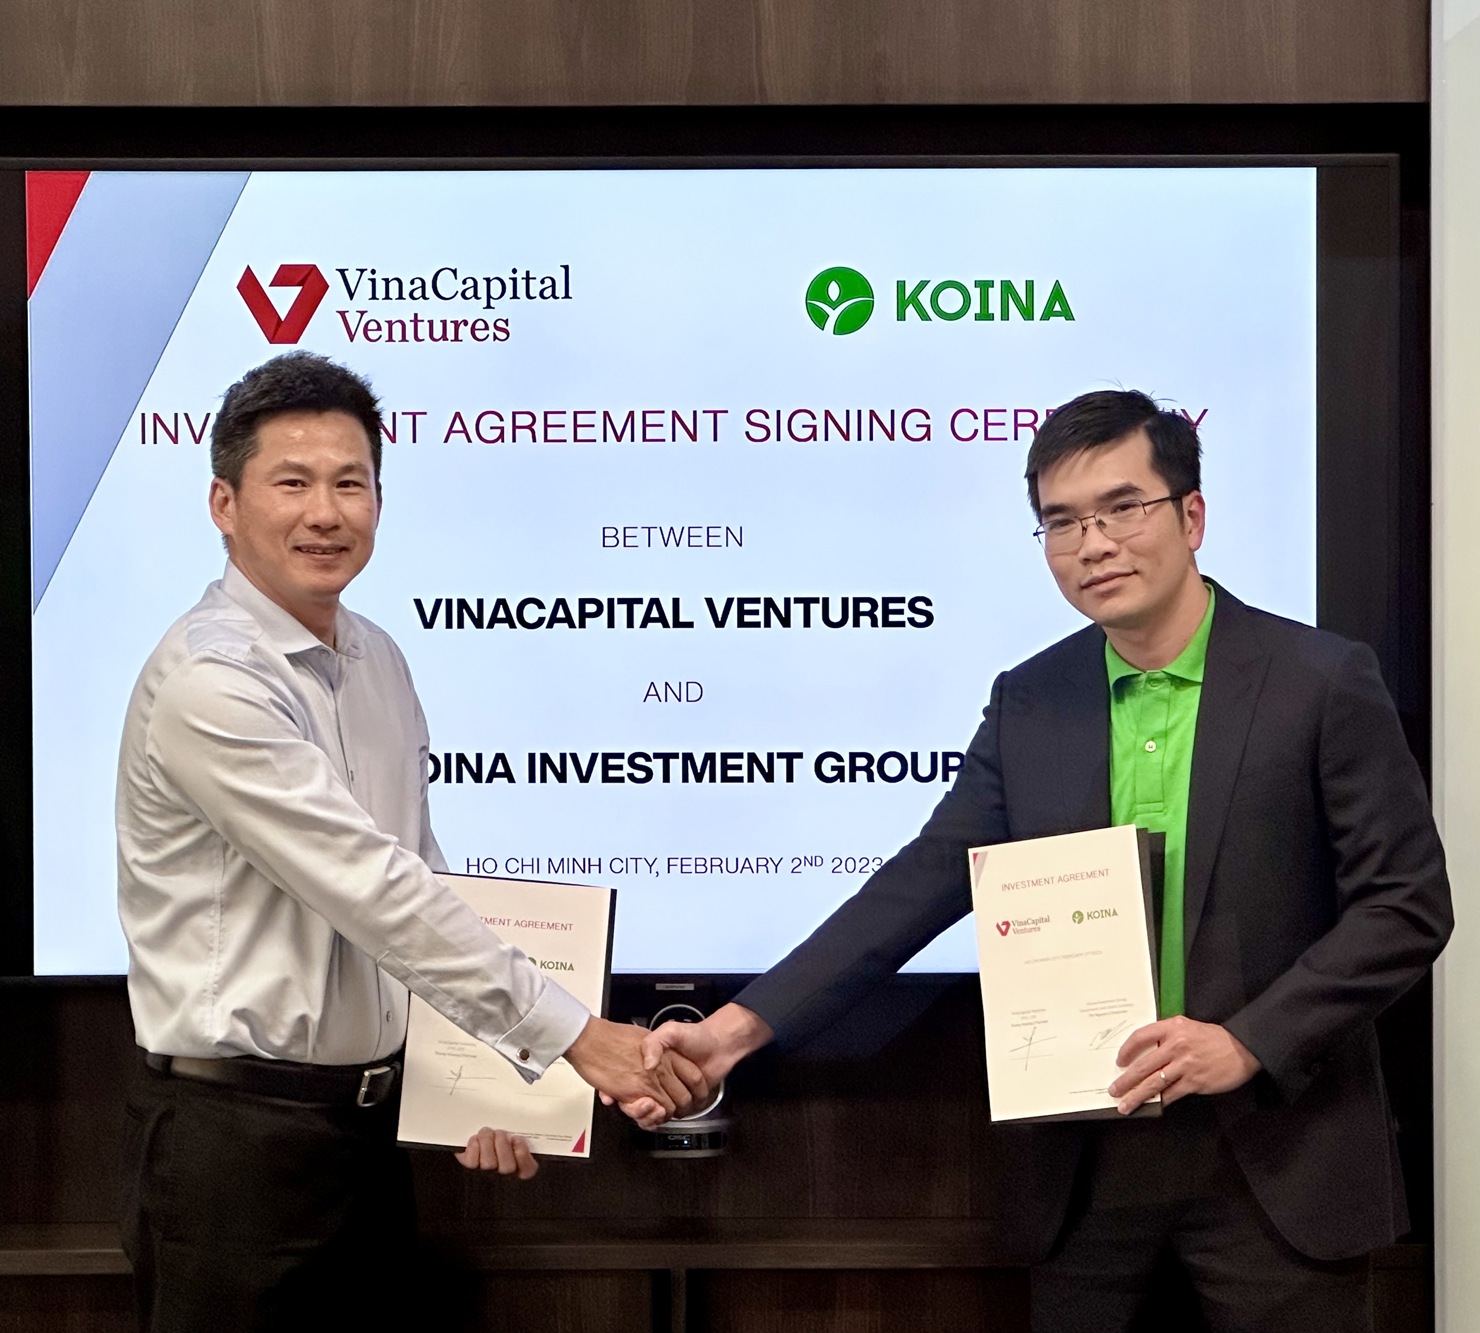 Đại diện VinaCapital Ventures và Đại diện Koina ký kết thương vụ đầu tư.